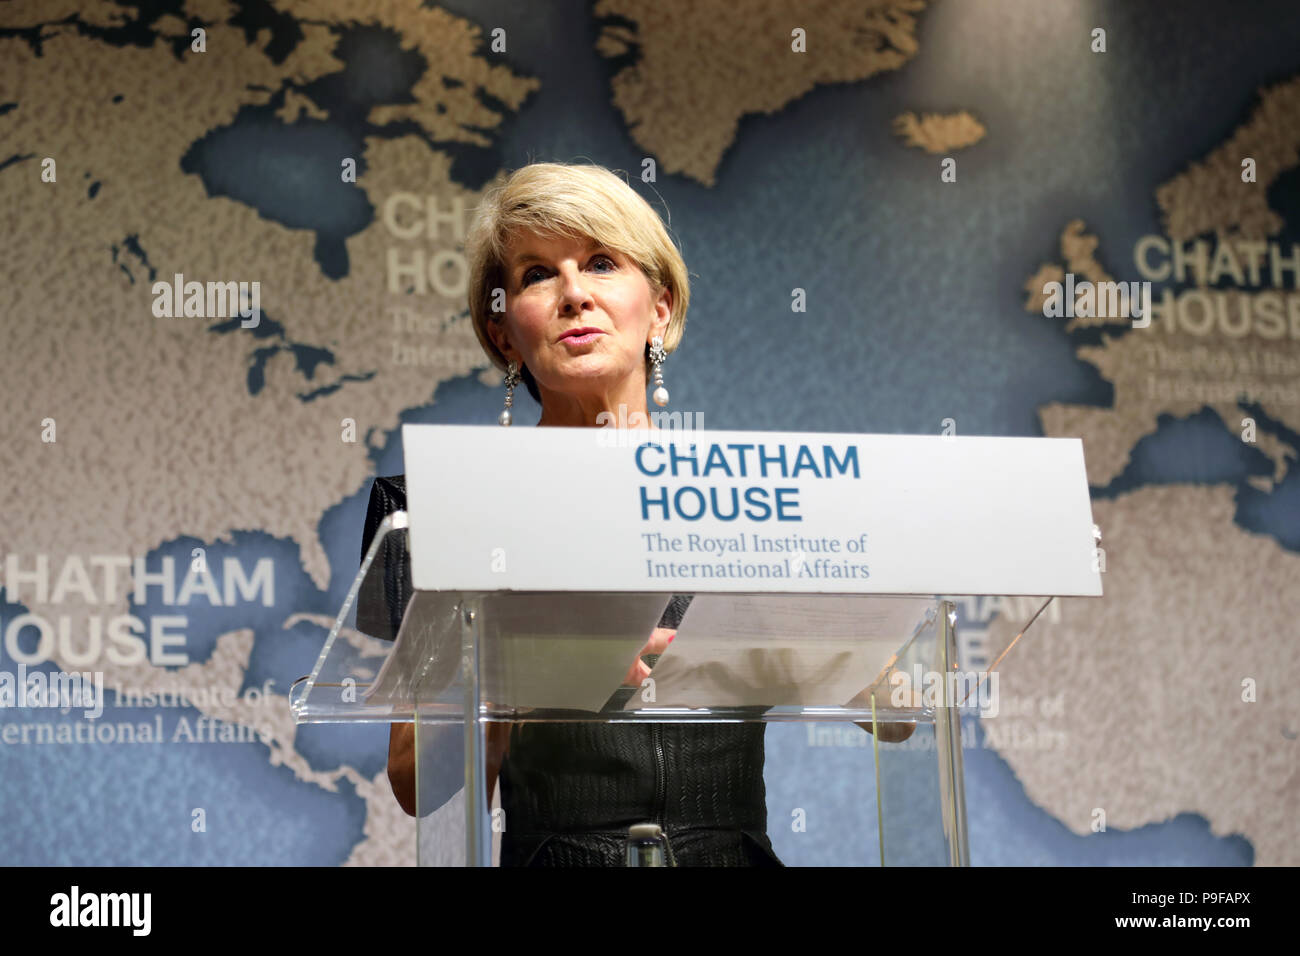 Londres/UK - 18 de julio 2018: Julie Bishop, Ministro de Relaciones Exteriores de Australia, hablando en el think tank Chatham House en Londres central. Crédito: Dominic Dudley/Alamy Live News Foto de stock